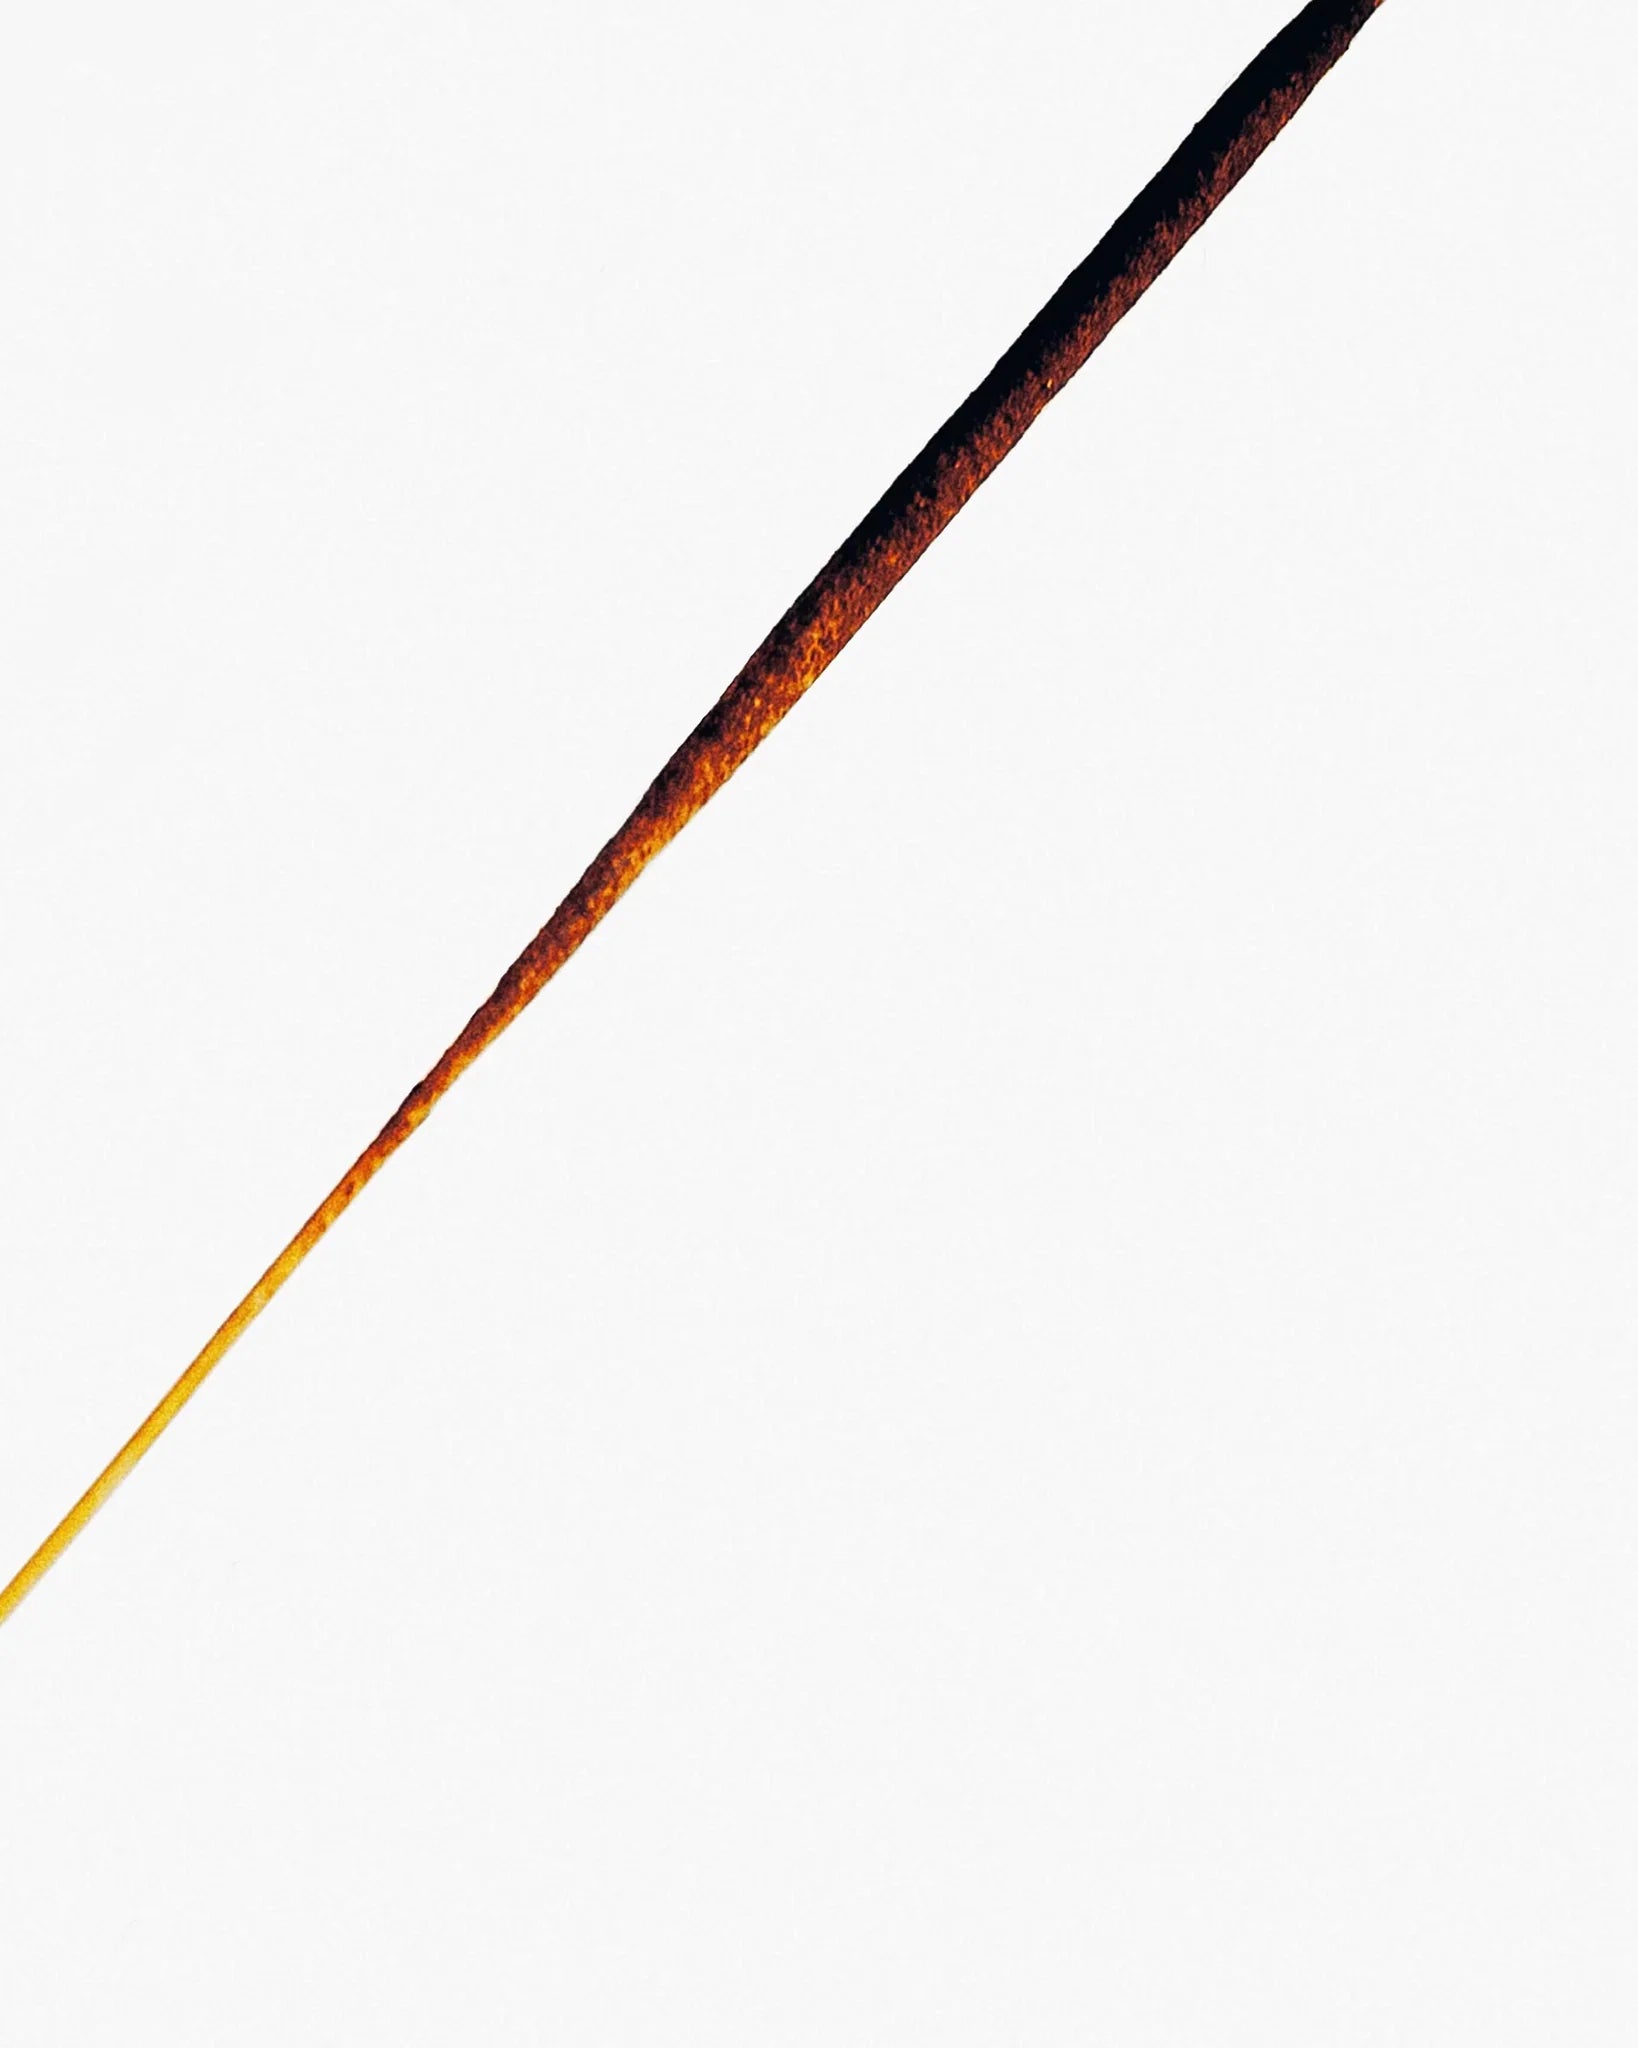 Incense - Cinnamon Core